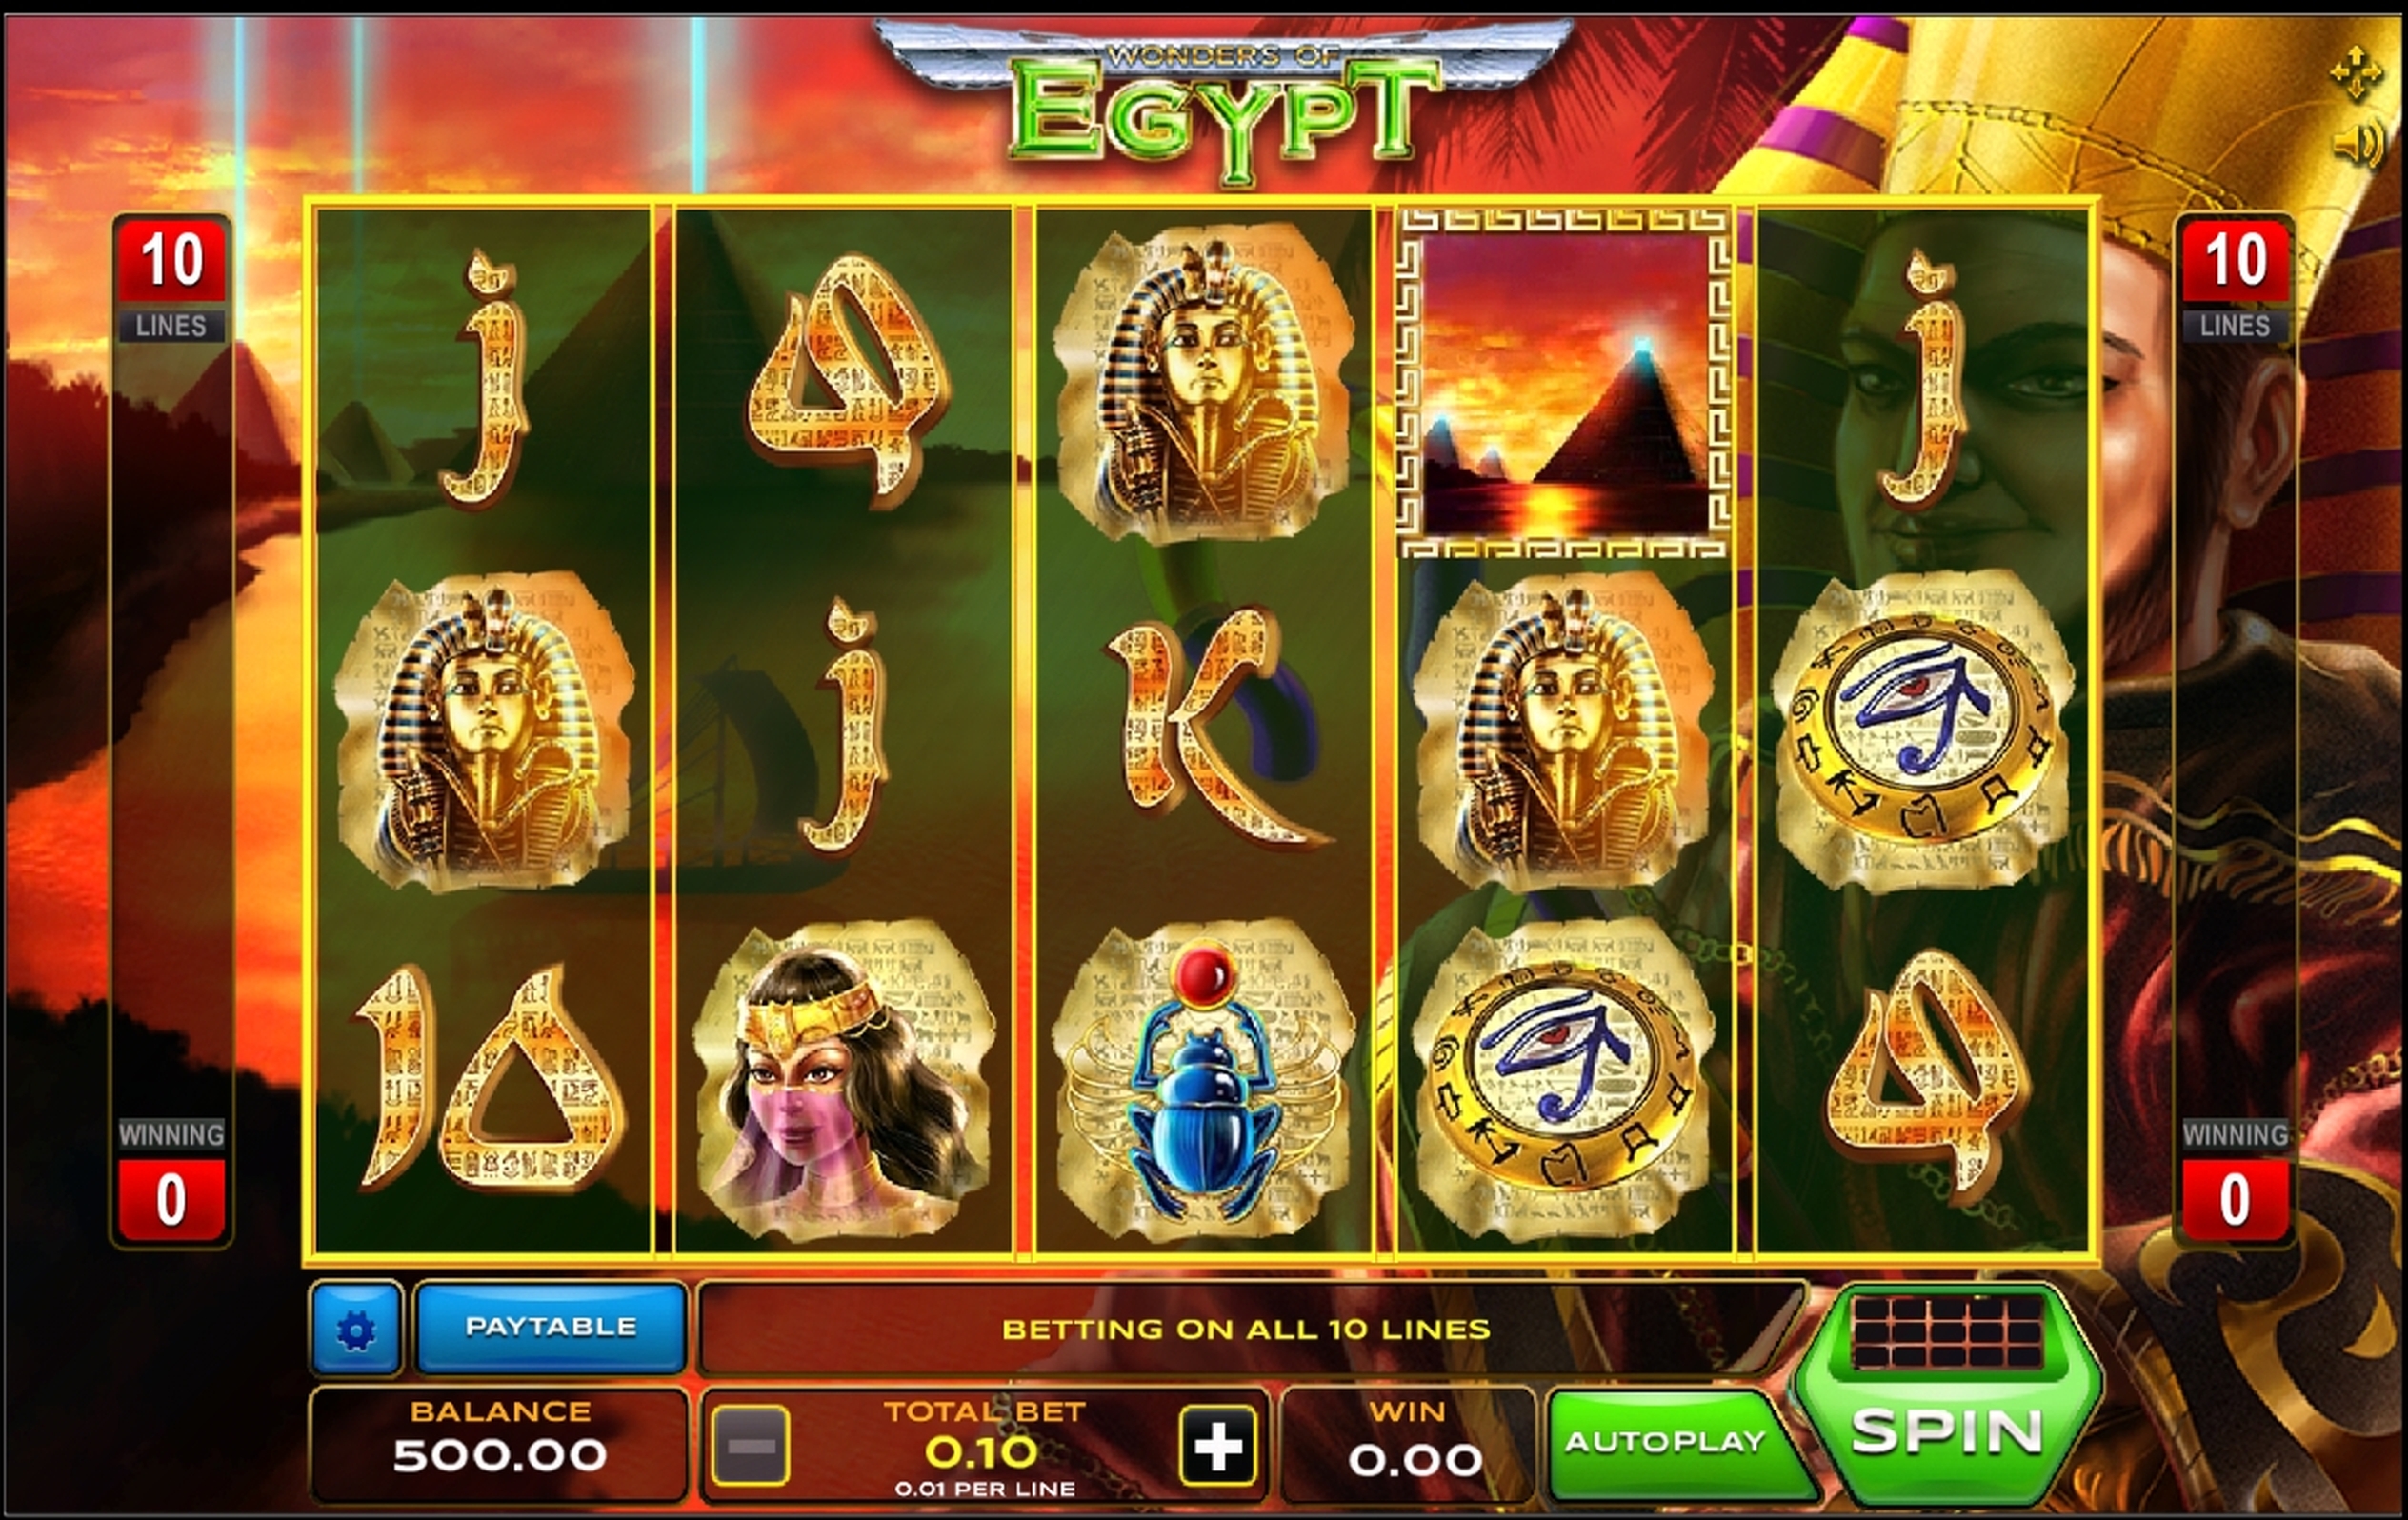 Reels in Wonders of Egypt Slot Game by Xplosive Slots Group